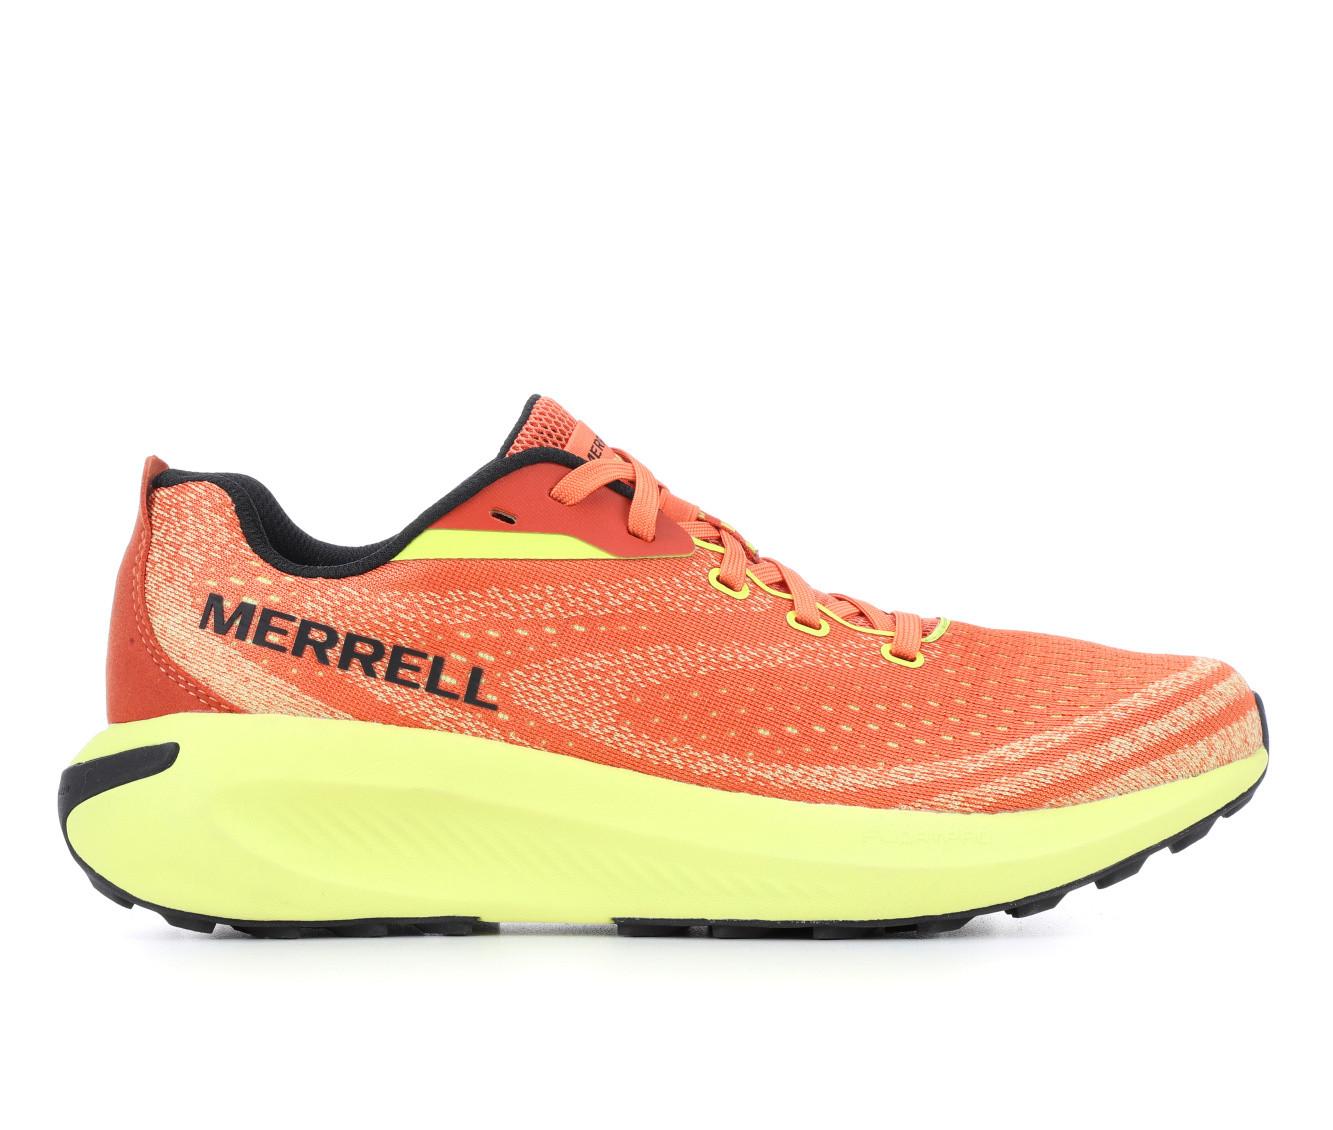 Men's Merrell M Morphlite Hiking Boots